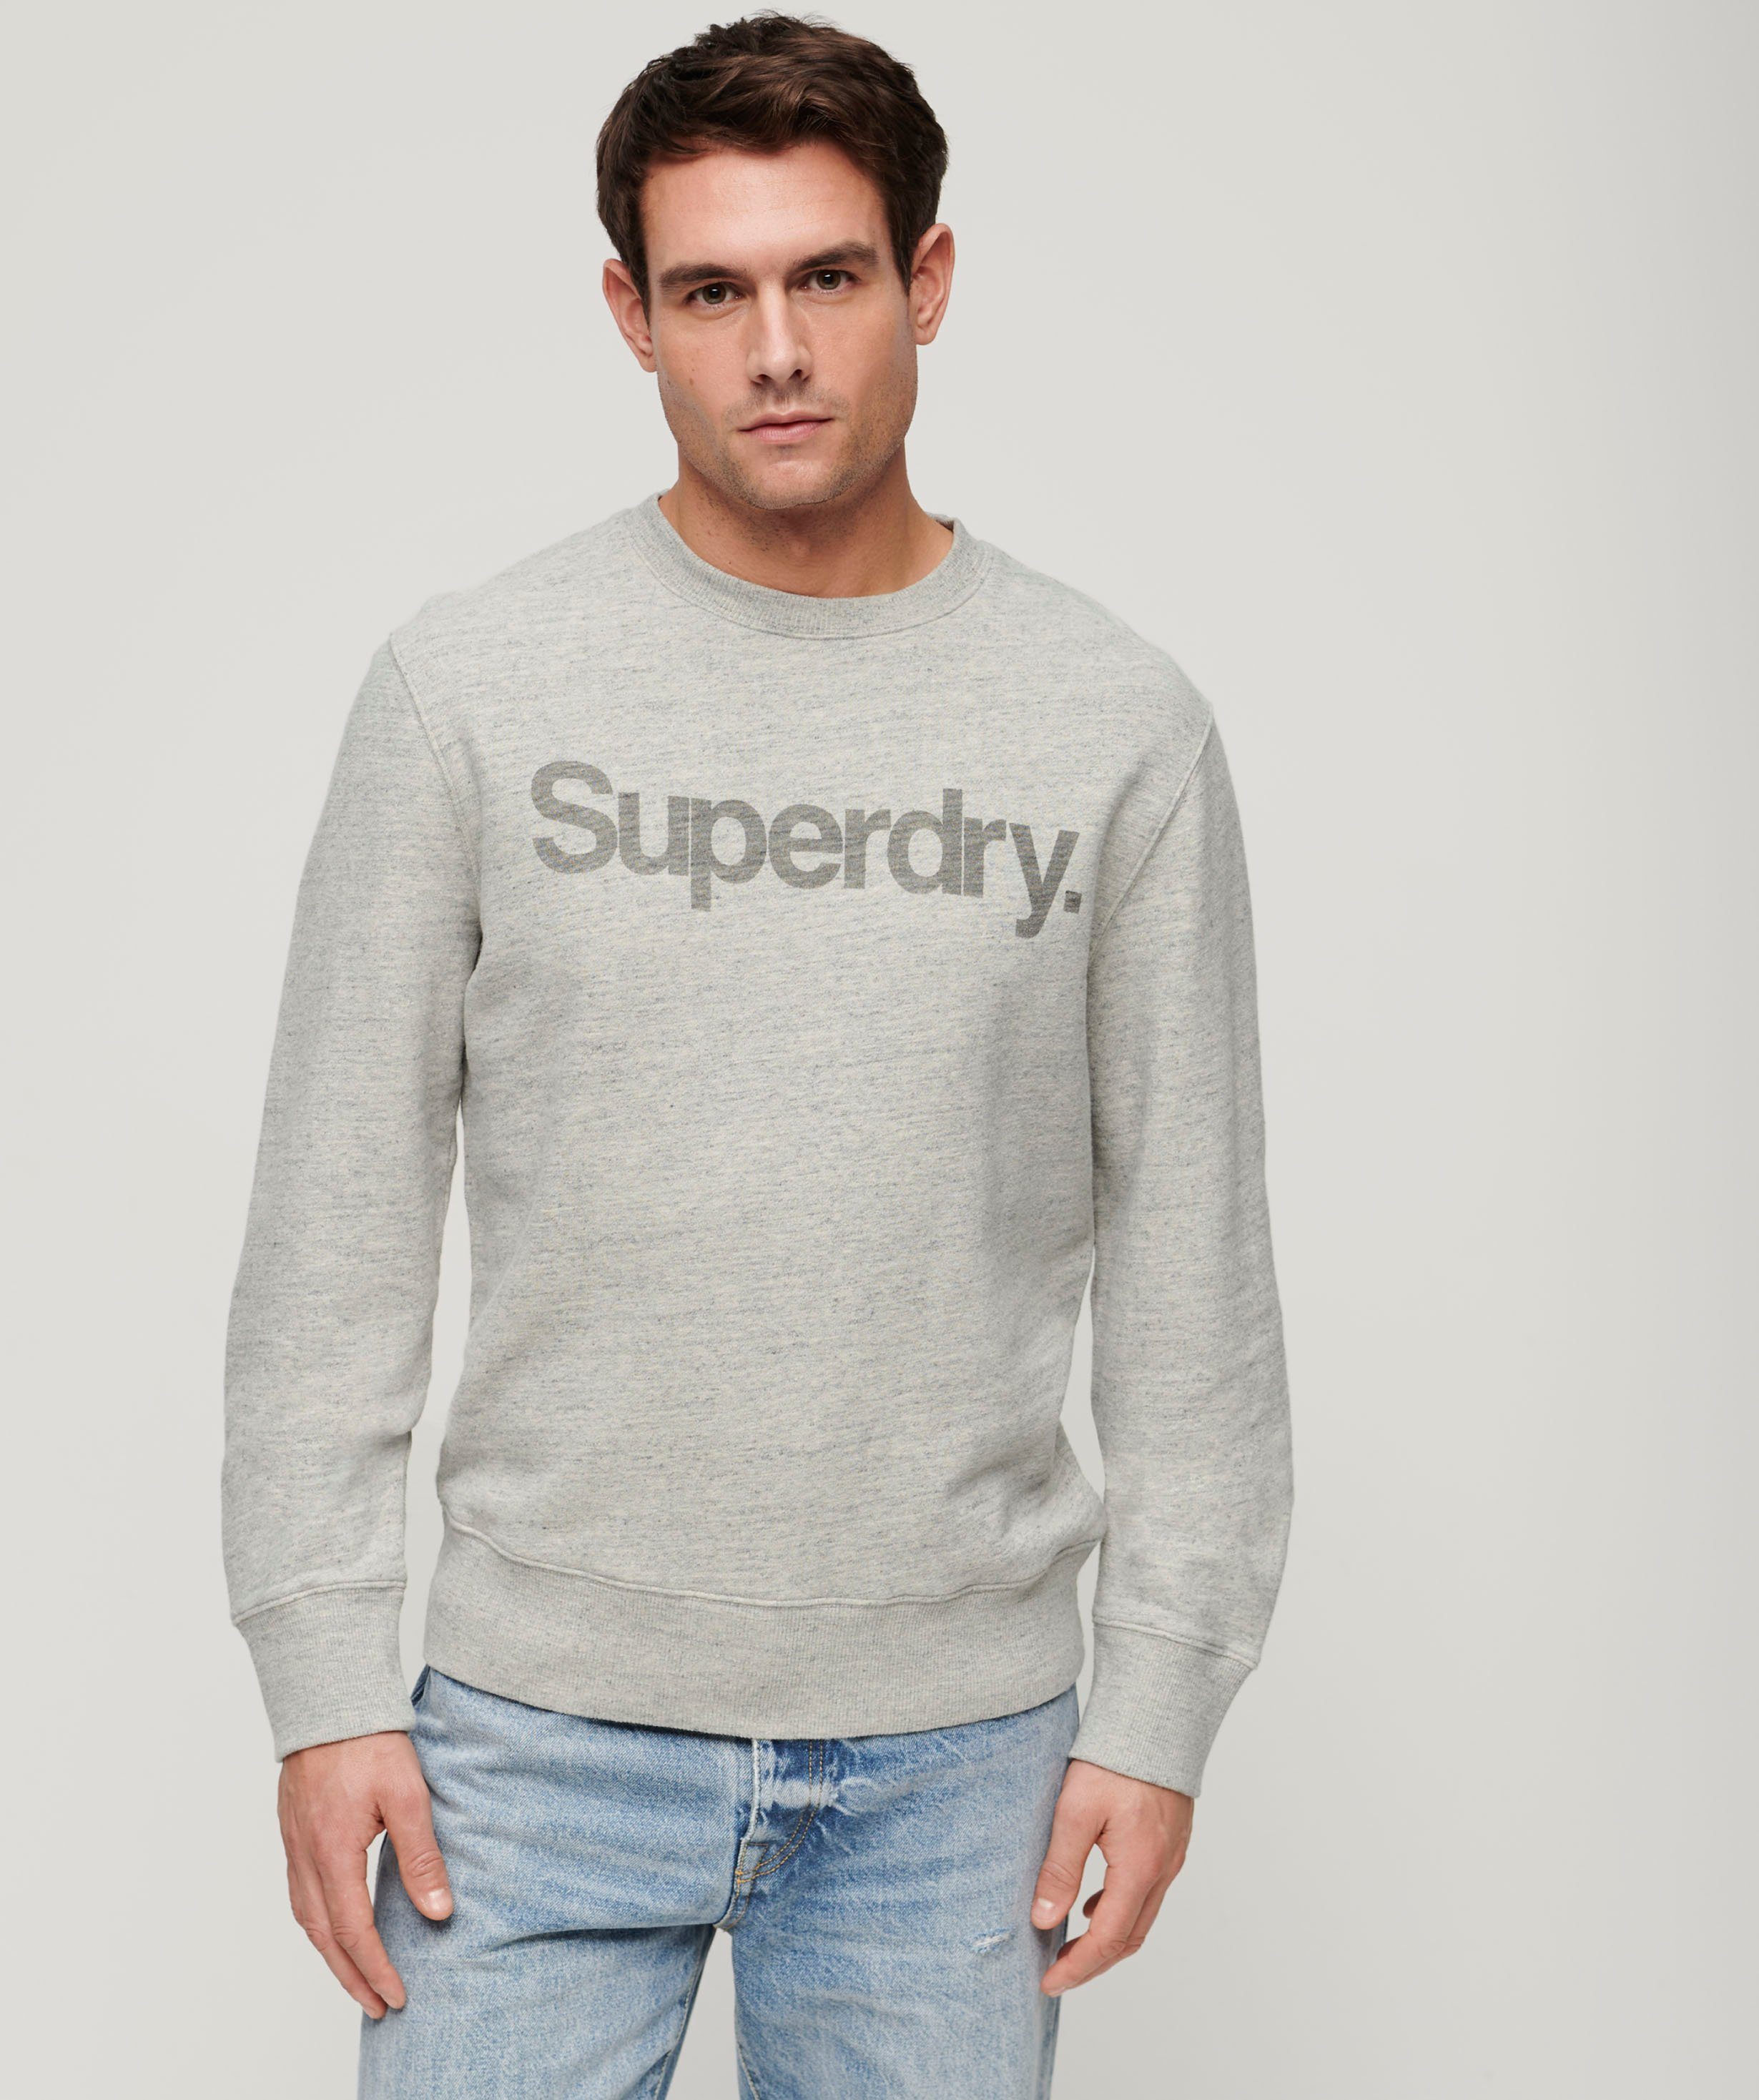 Superdry Sweatshirt CORE LOGO CITY marl LOOSE athletic CREW grey